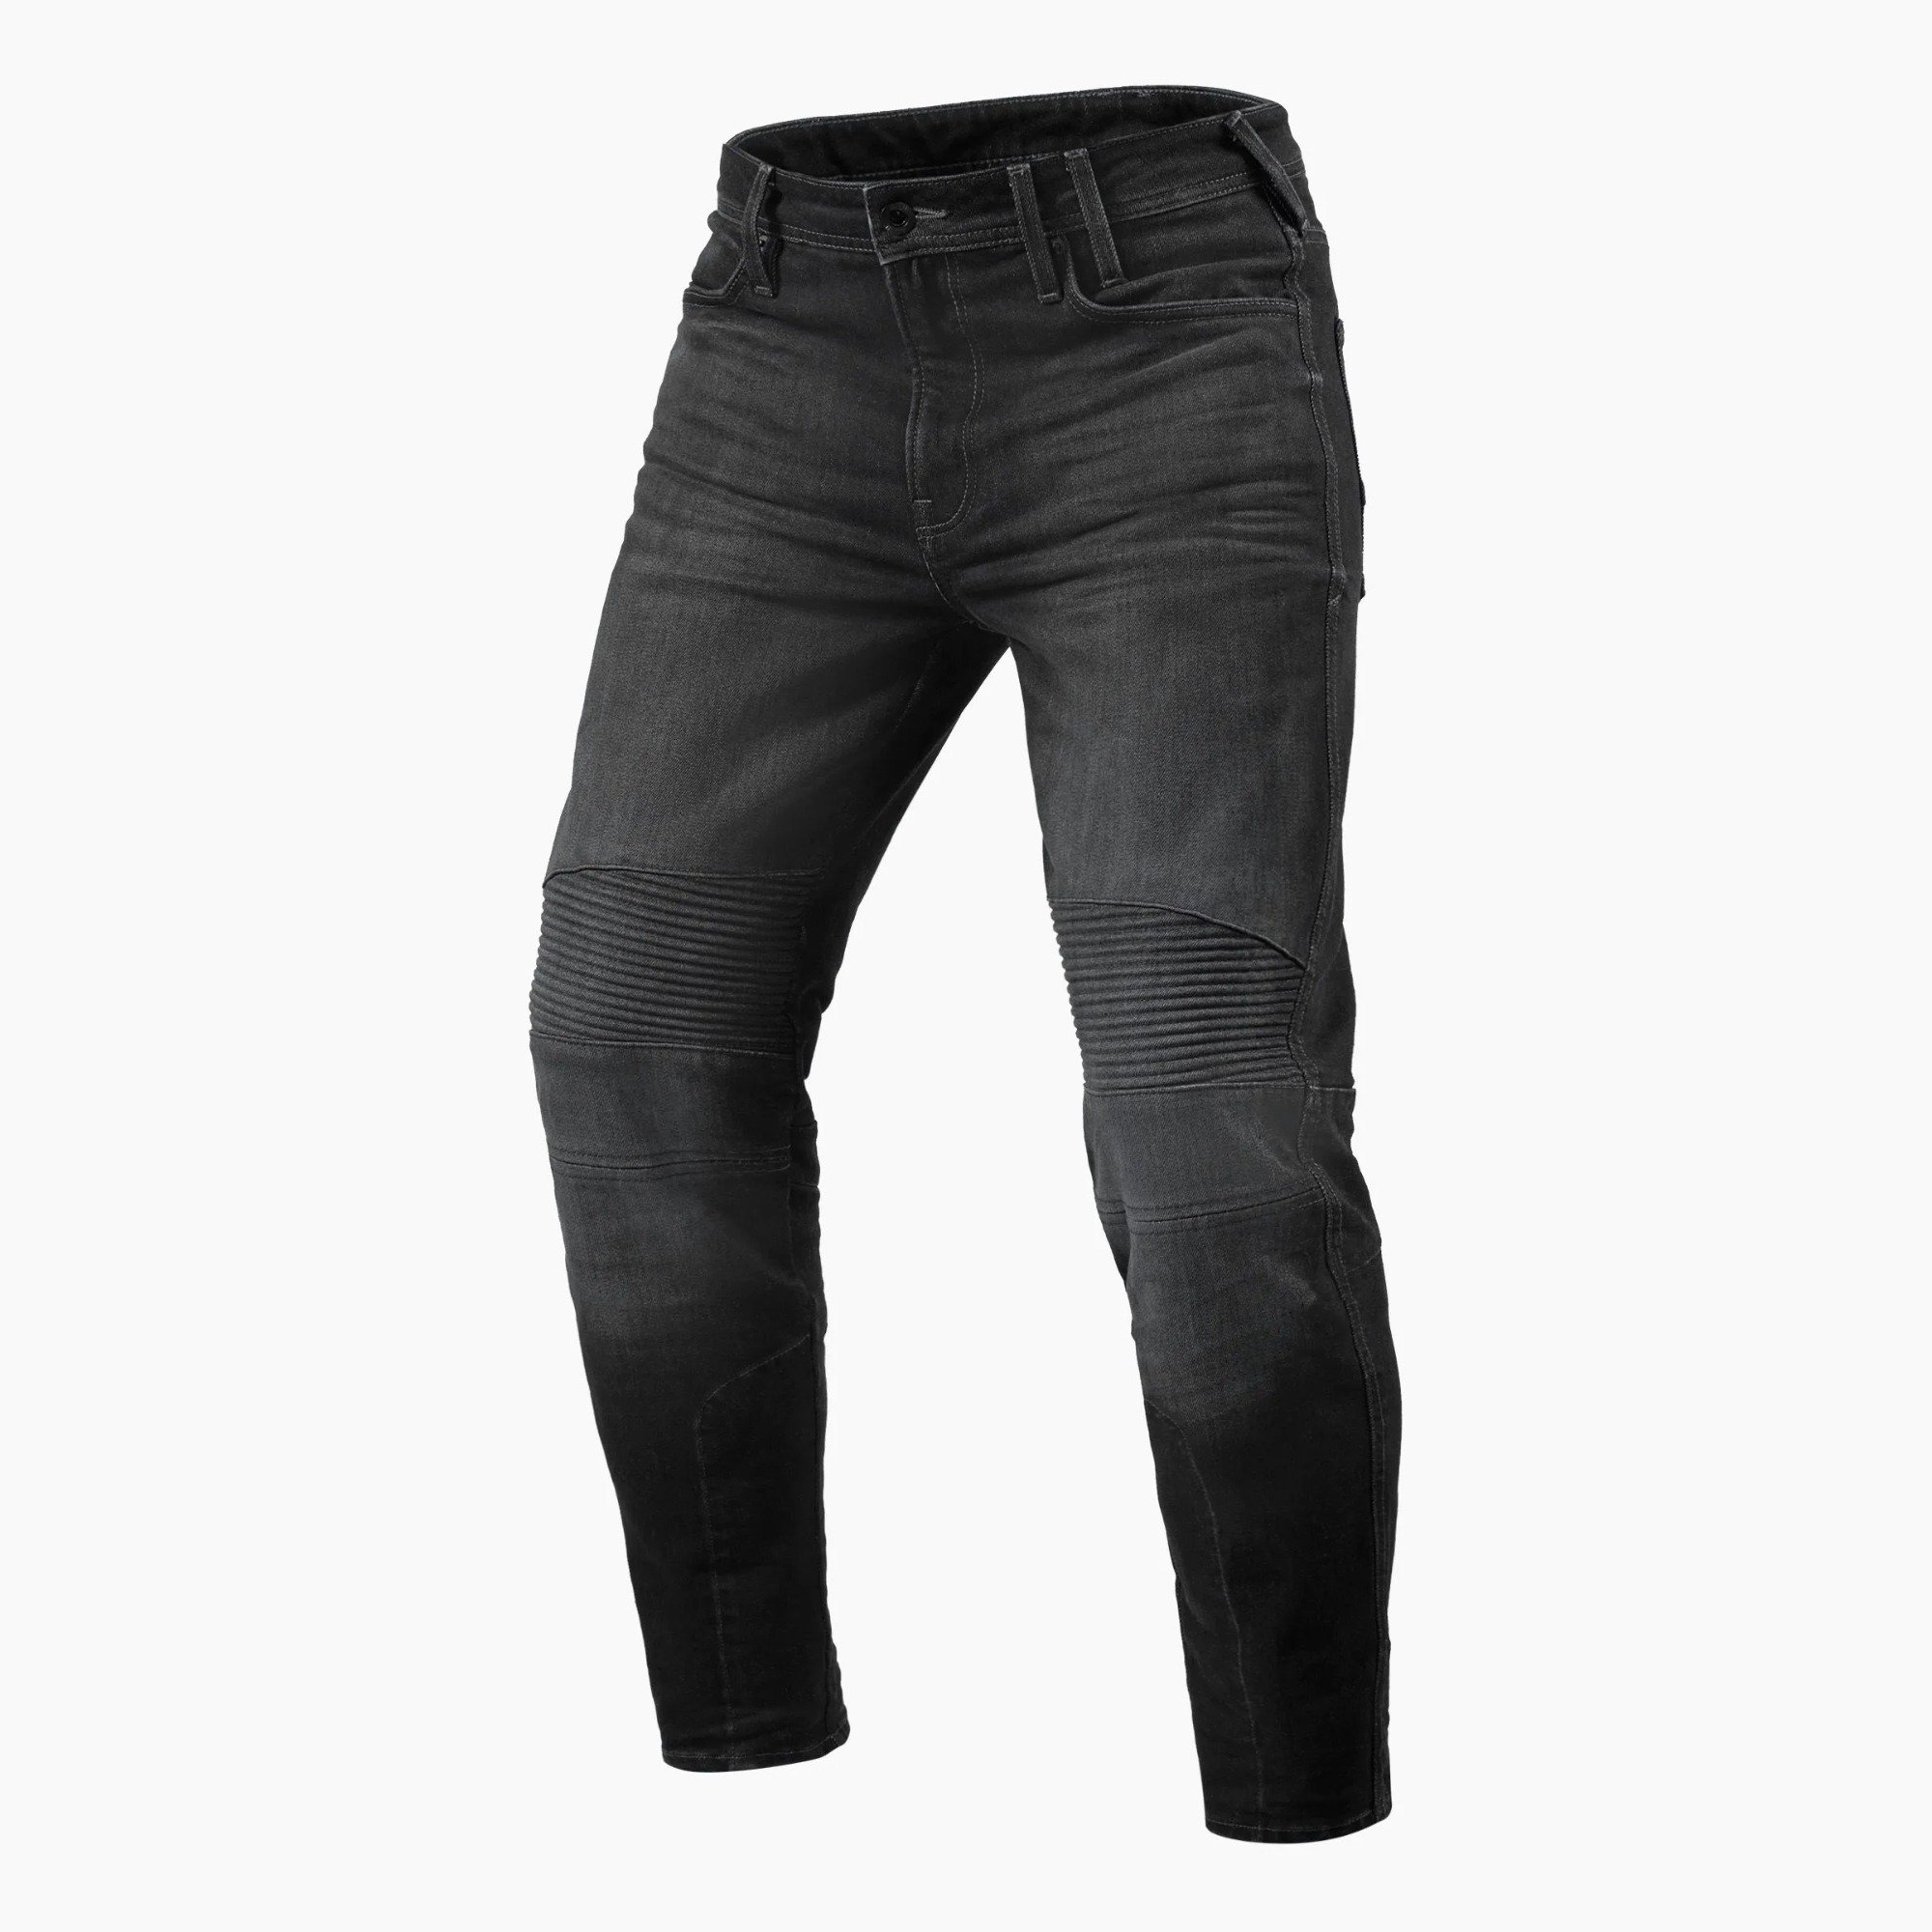 Image of REV'IT! Jeans Moto 2 TF Dark Grey Used Motorcycle Jeans Size L36/W31 EN